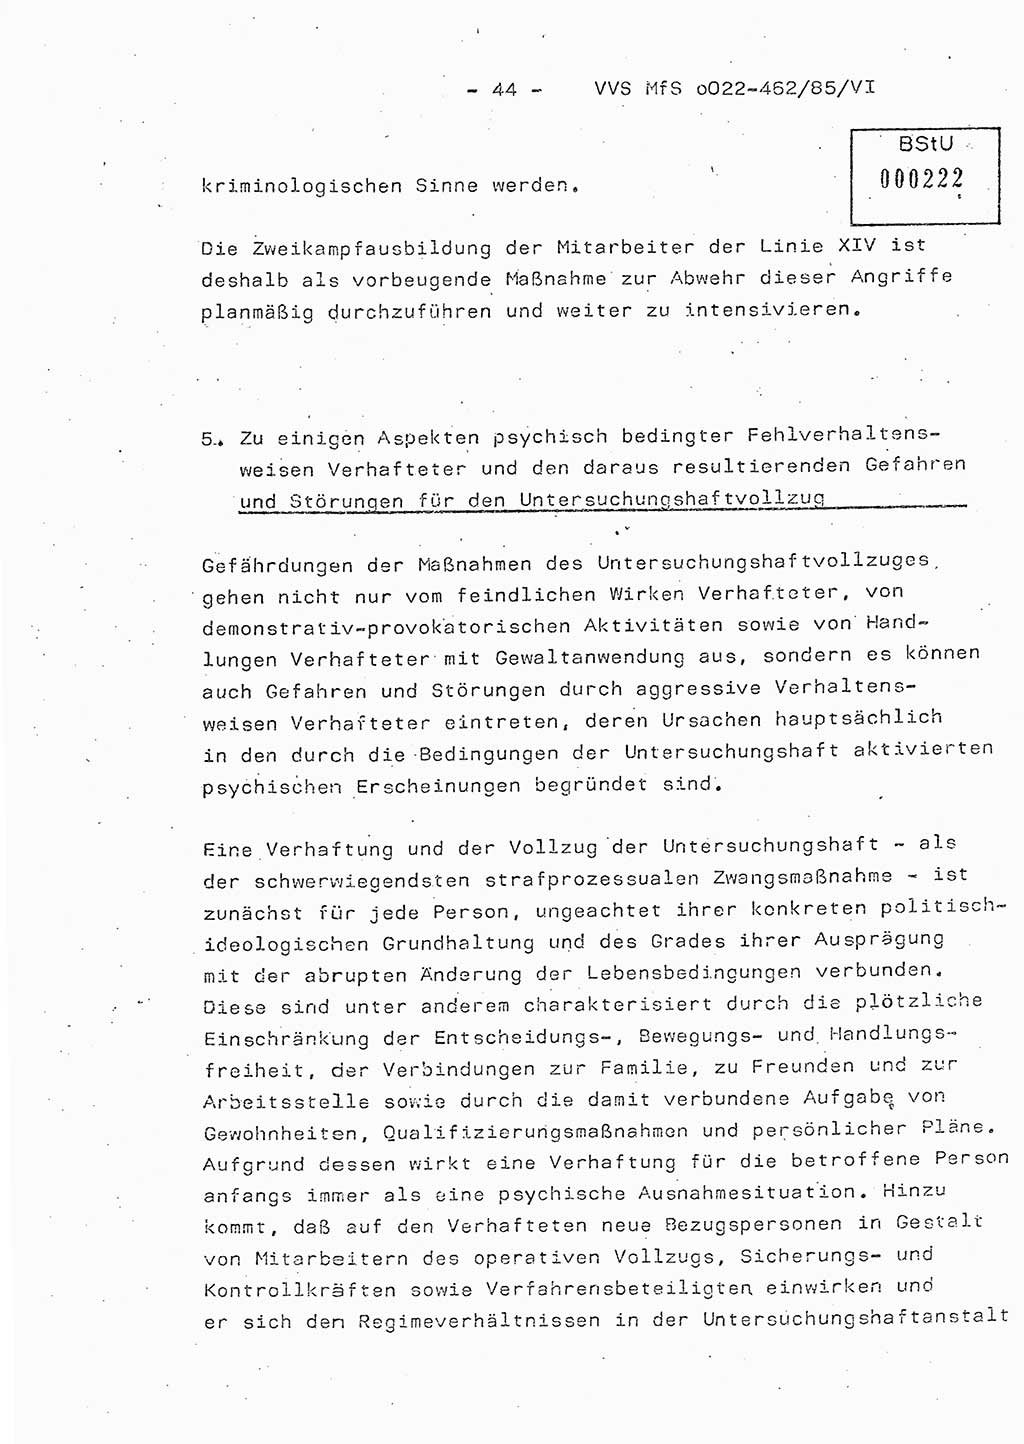 Der Untersuchungshaftvollzug im MfS, Schulungsmaterial Teil Ⅵ, Ministerium für Staatssicherheit [Deutsche Demokratische Republik (DDR)], Abteilung (Abt.) ⅩⅣ, Vertrauliche Verschlußsache (VVS) o022-462/85/Ⅵ, Berlin 1985, Seite 44 (Sch.-Mat. Ⅵ MfS DDR Abt. ⅩⅣ VVS o022-462/85/Ⅵ 1985, S. 44)